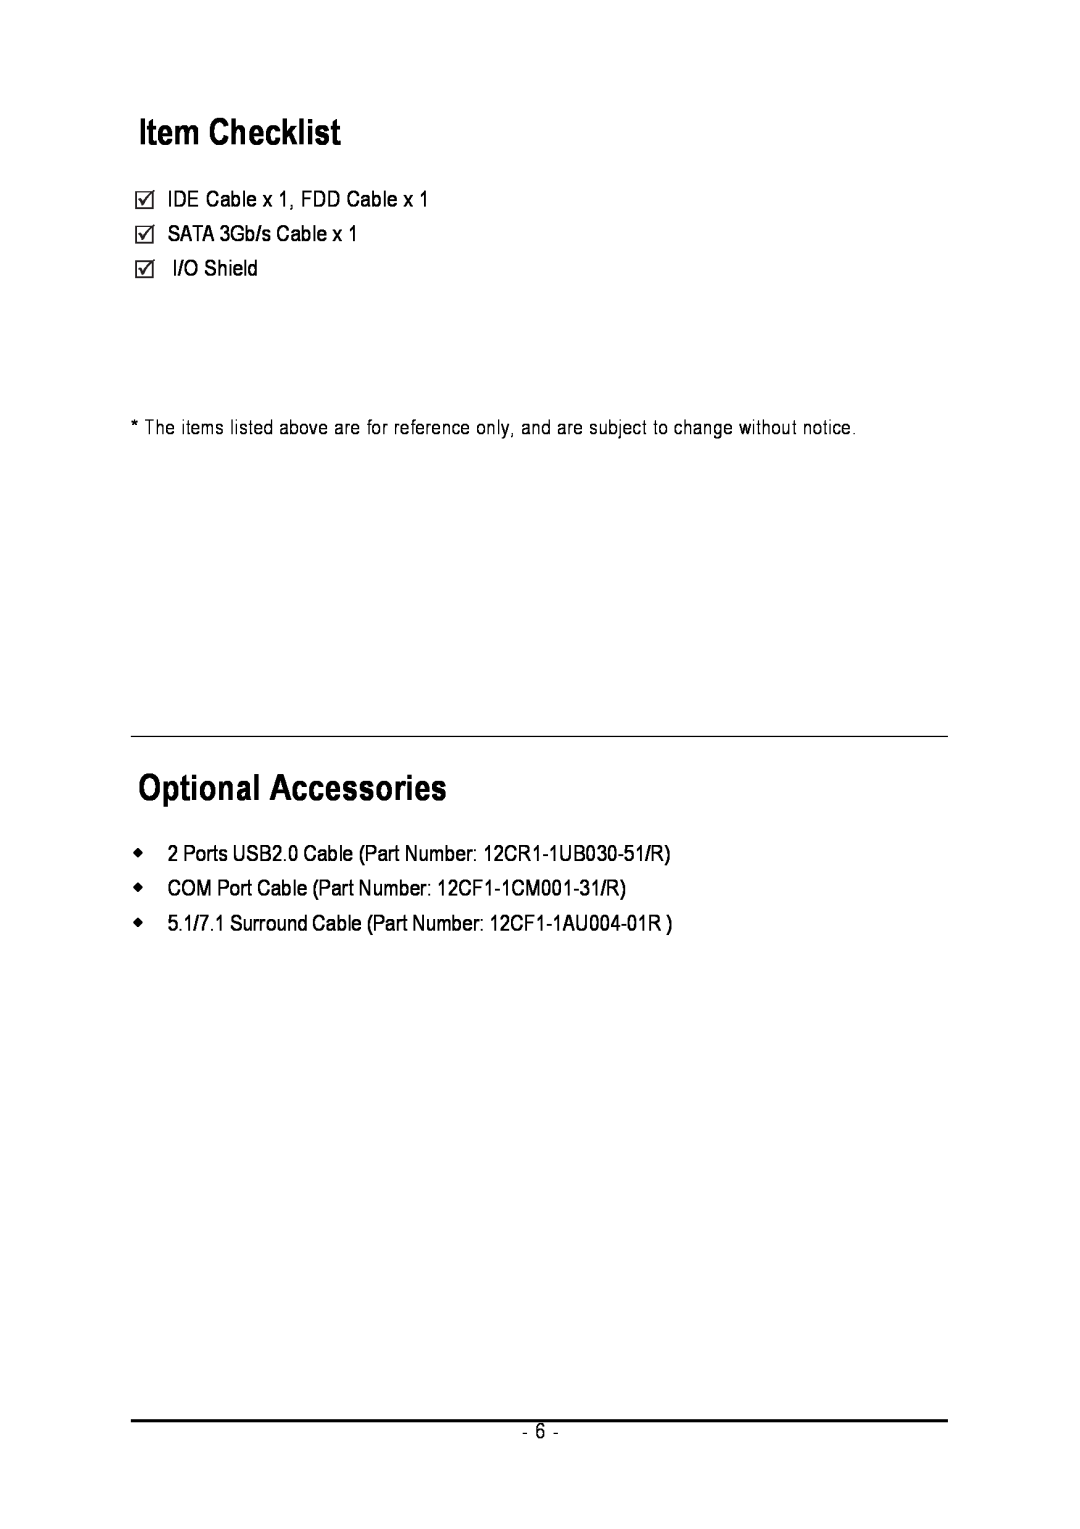 Intel GA-8I945GZME-RH Item Checklist, Optional Accessories, IDE Cable x 1, FDD Cable x SATA 3Gb/s Cable x I/O Shield 